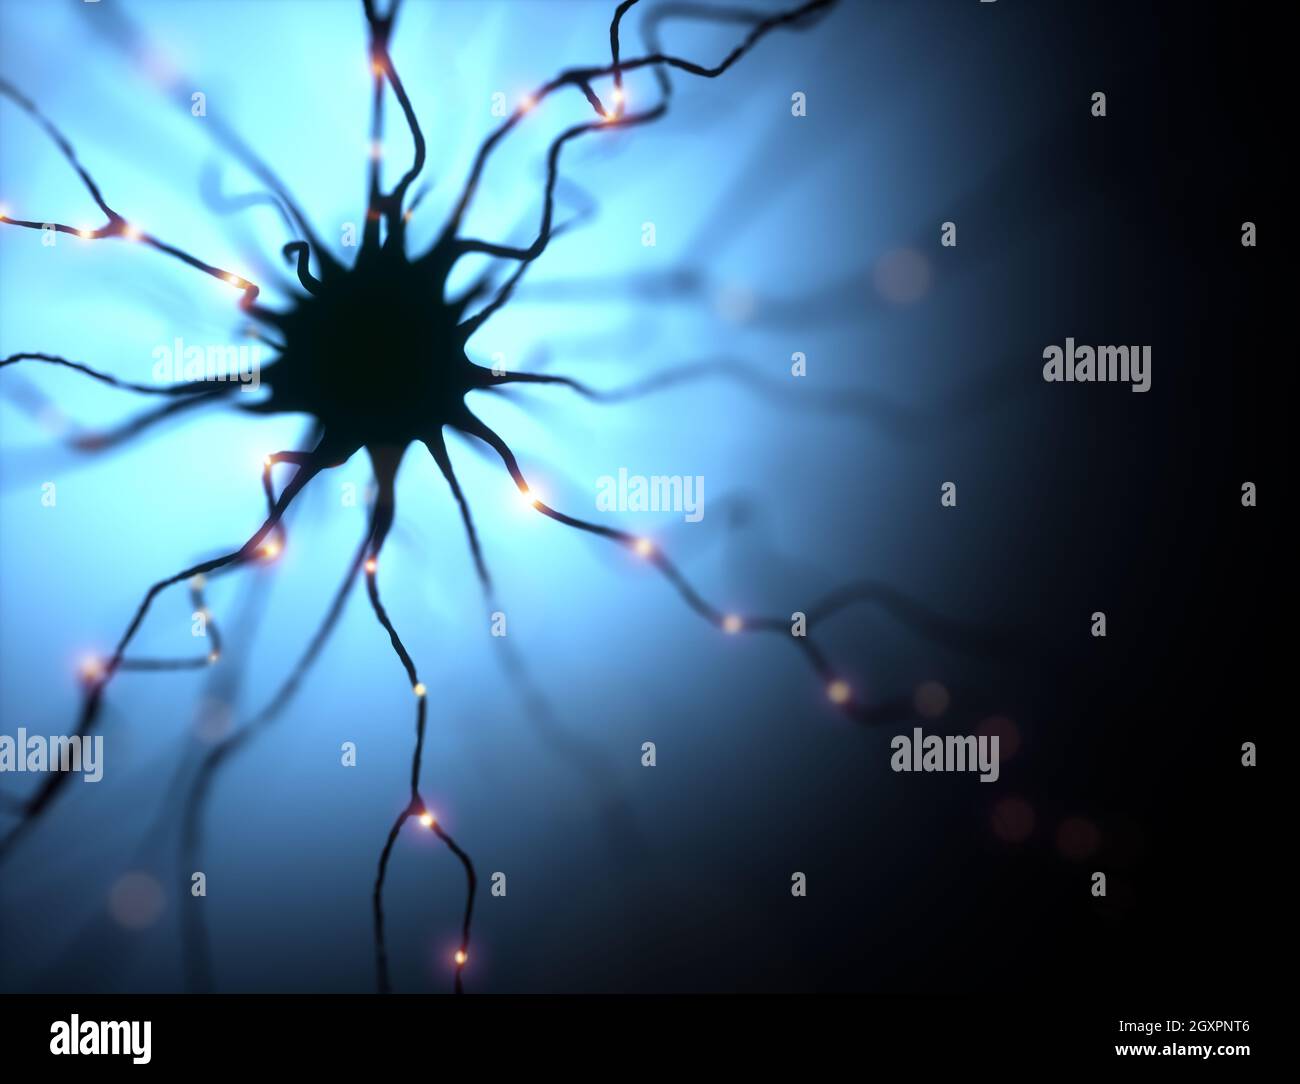 Illustrazione 3D, neuroni e loro connessioni. Simulazione fotografica microscopica del sistema nervoso umano. Foto Stock